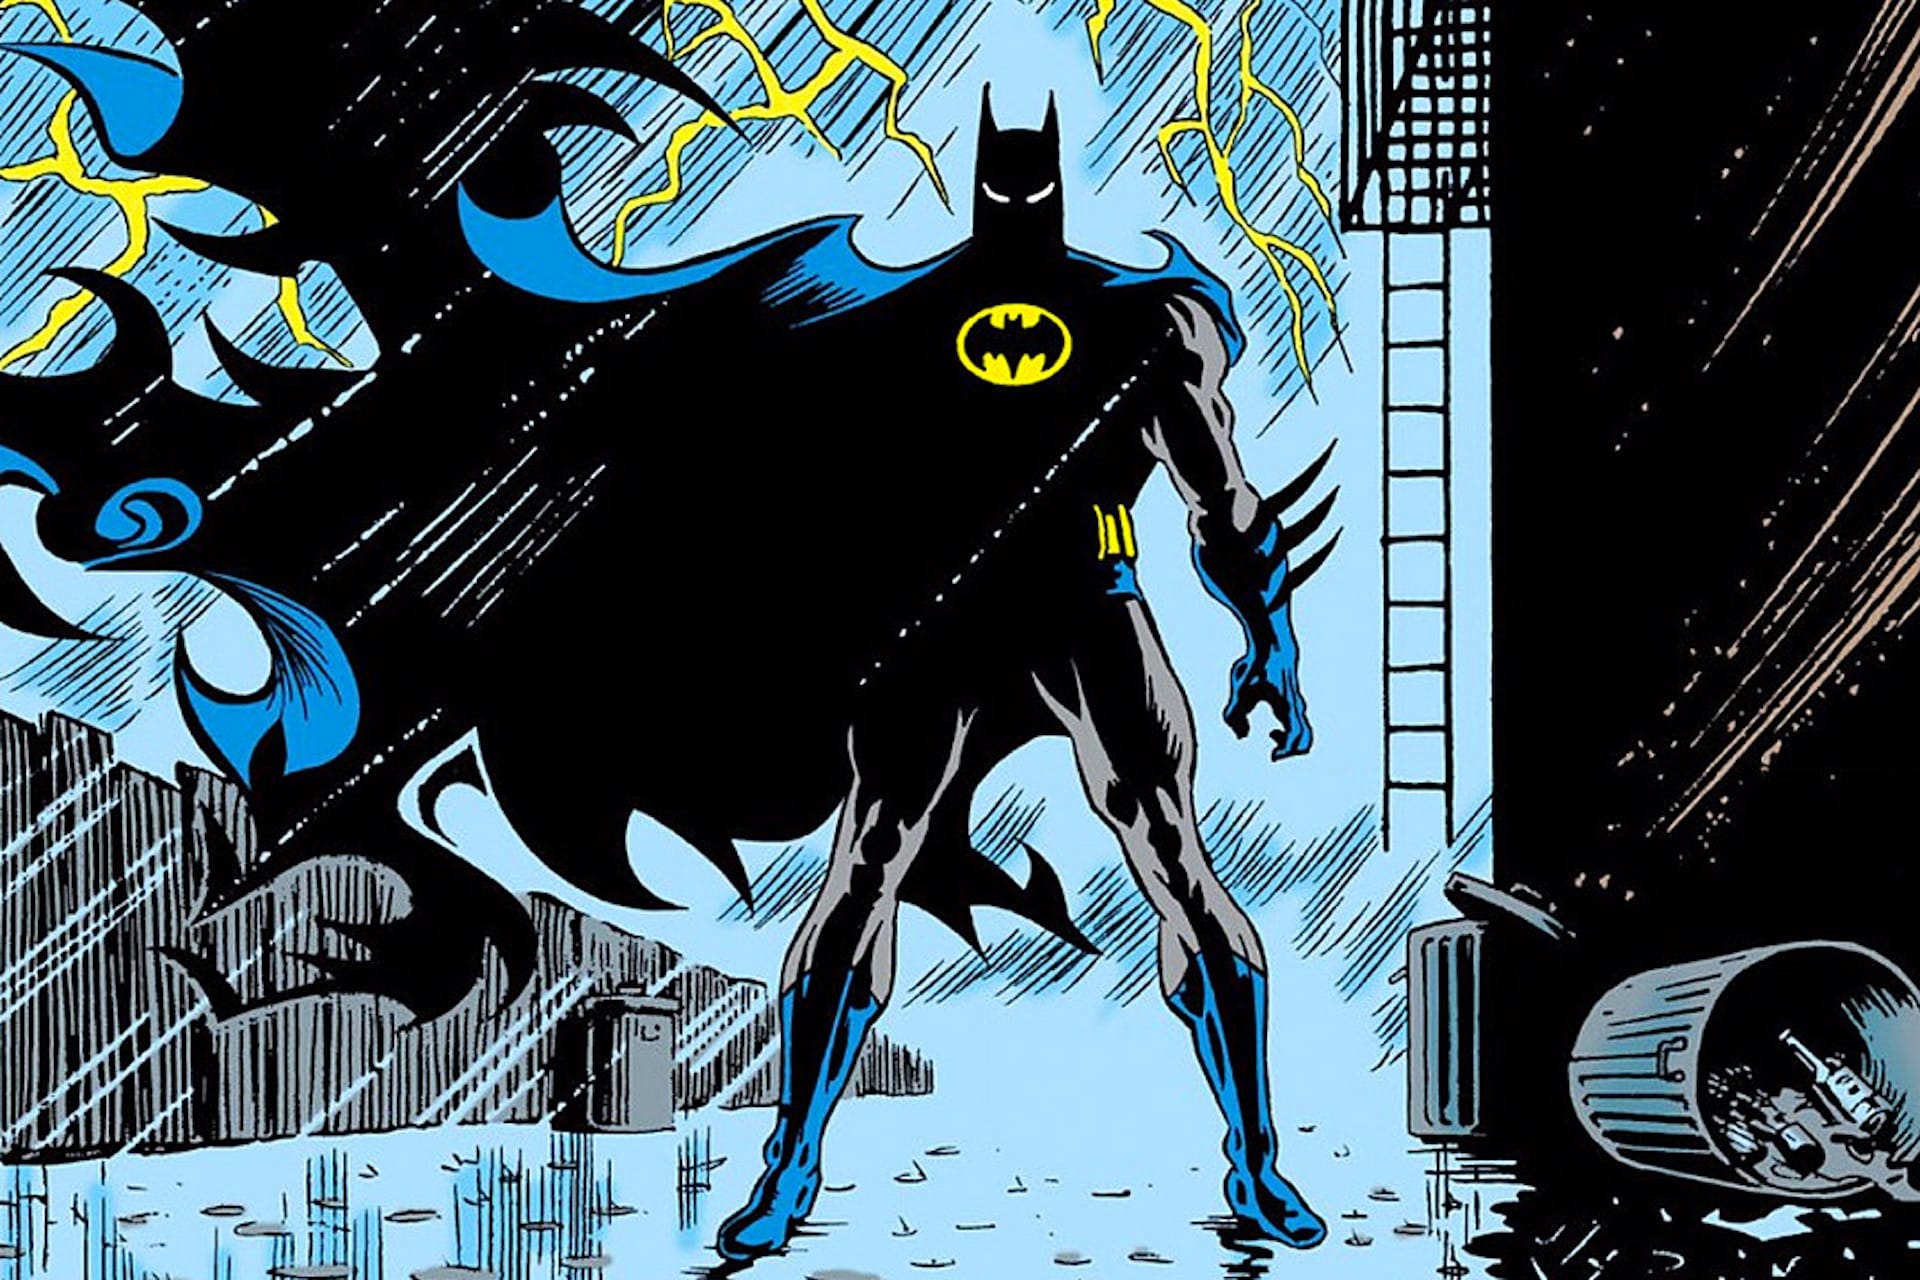 Norm Breyfogle: morto a 58 l’artista di Batman e co-creatore dell’Ultraverse